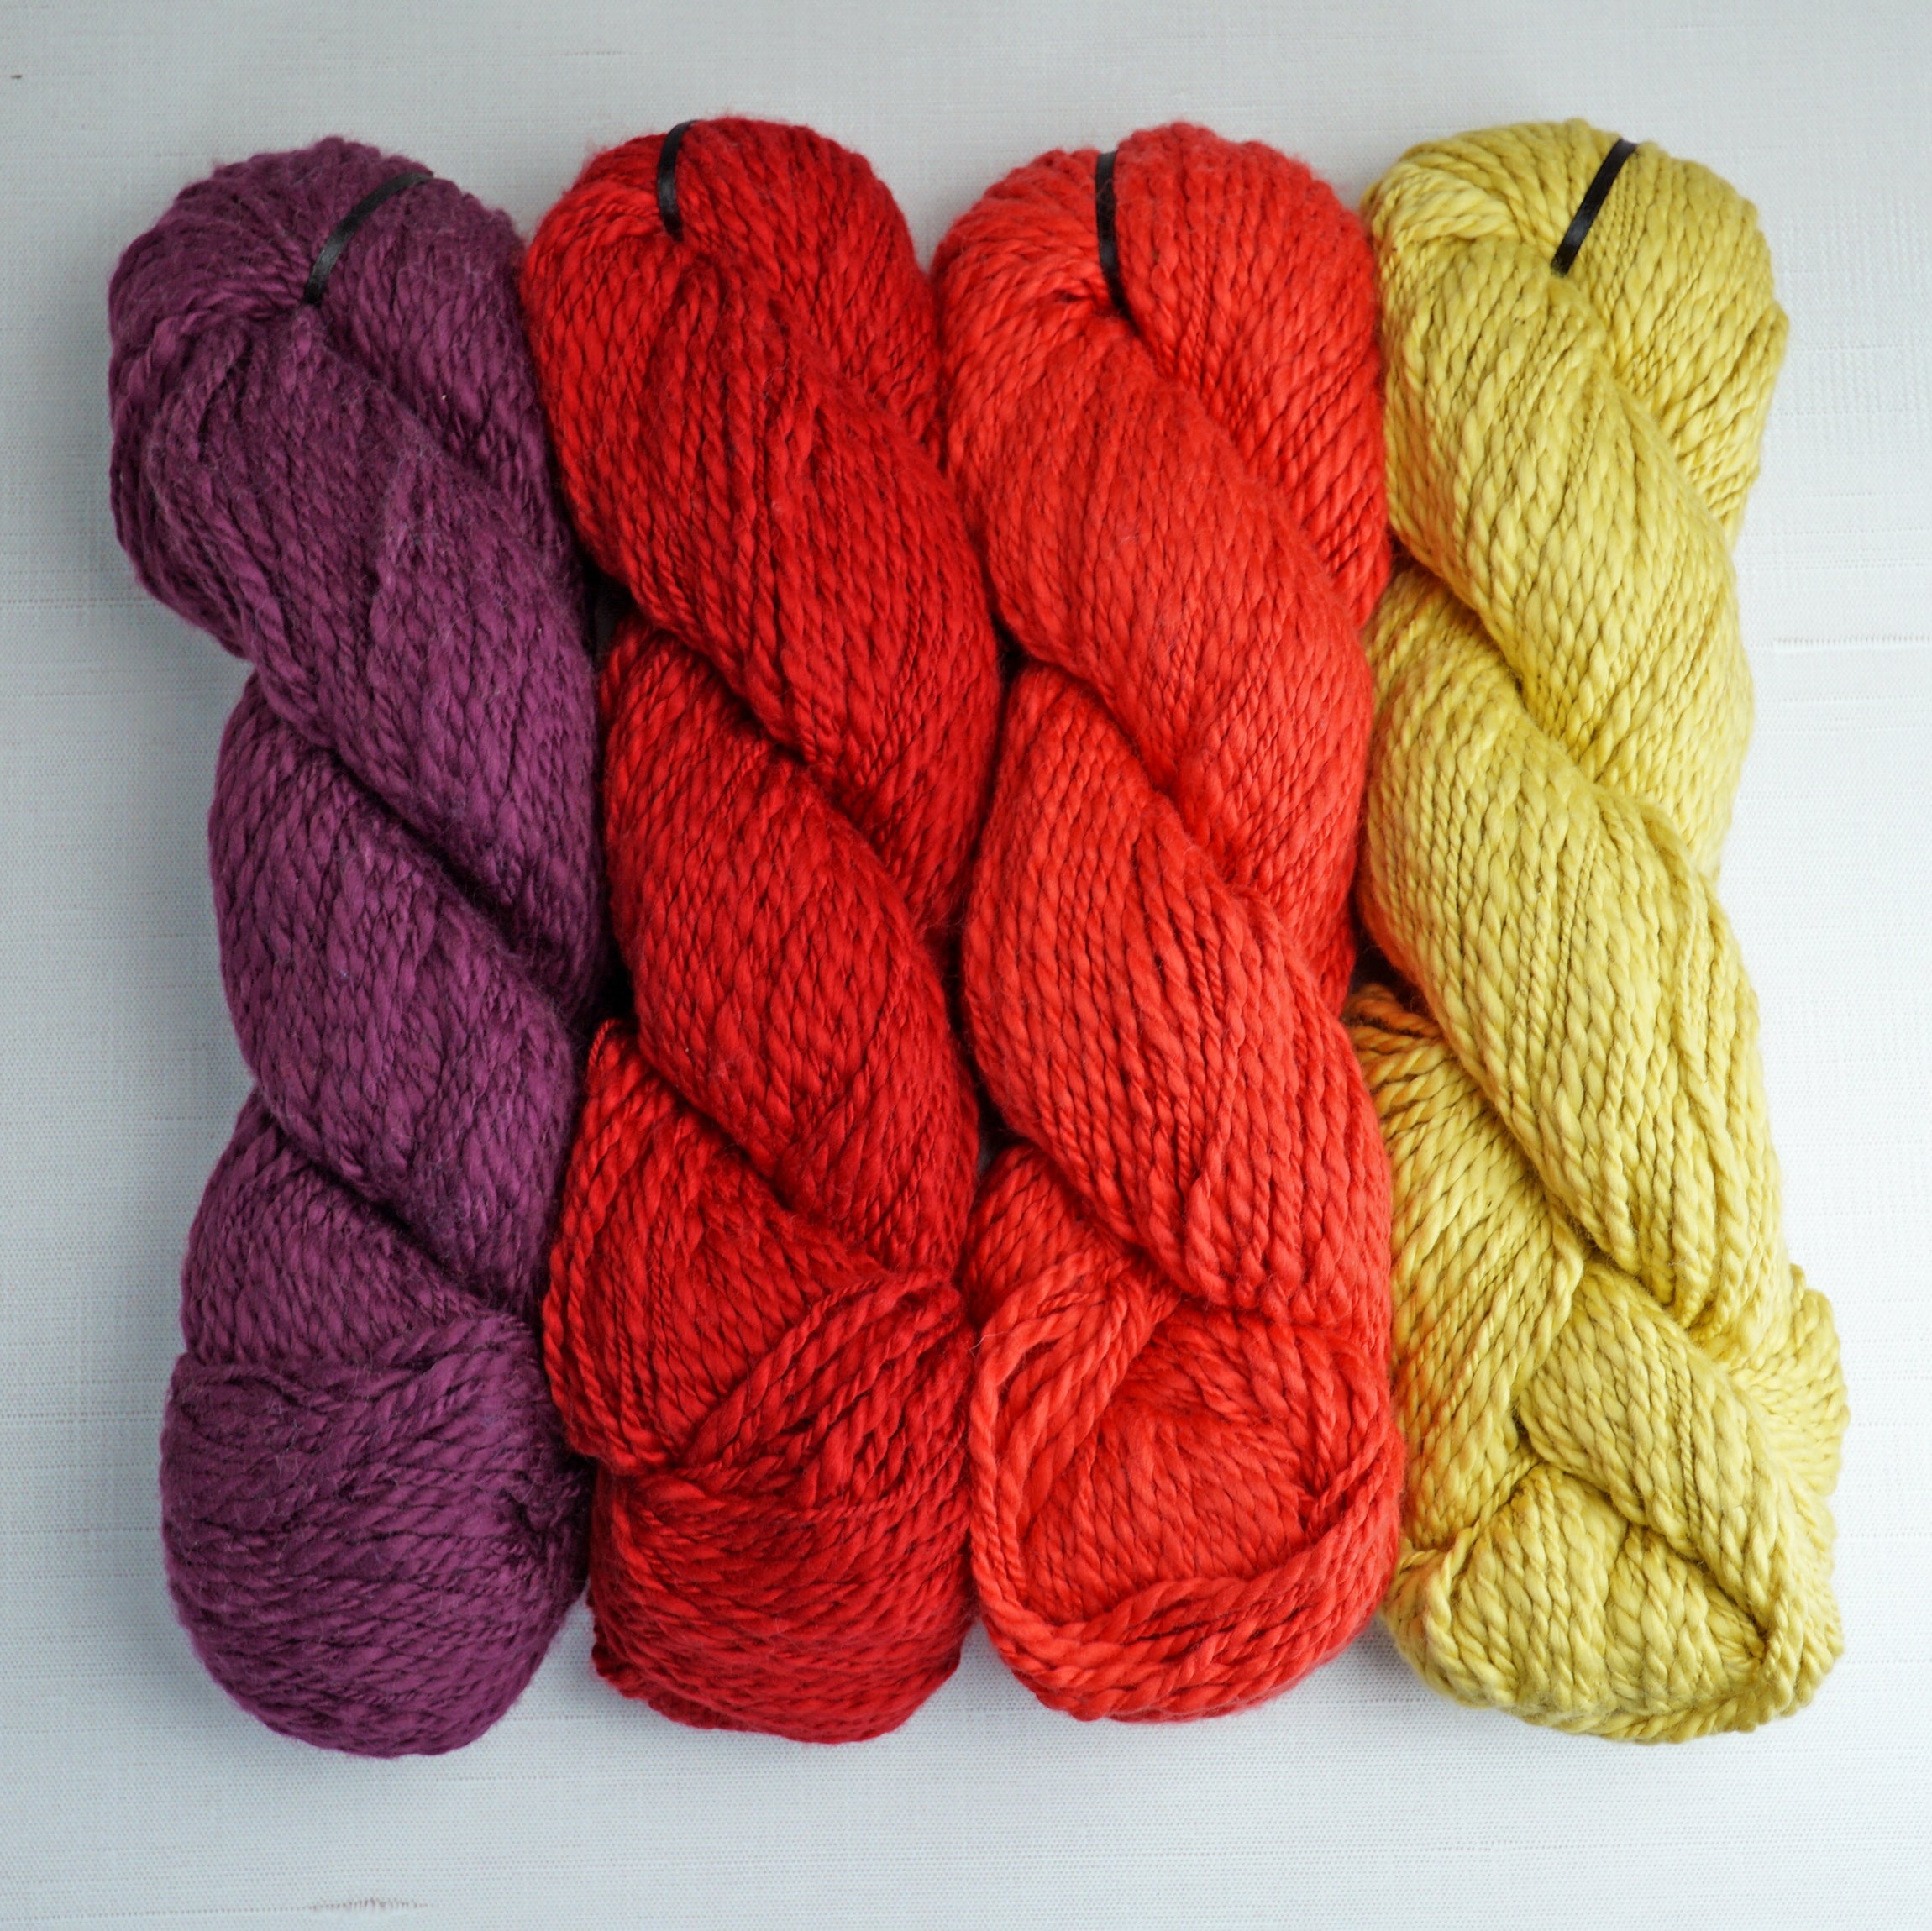 Sunset Stroll(er) Blanket Crochet Kit